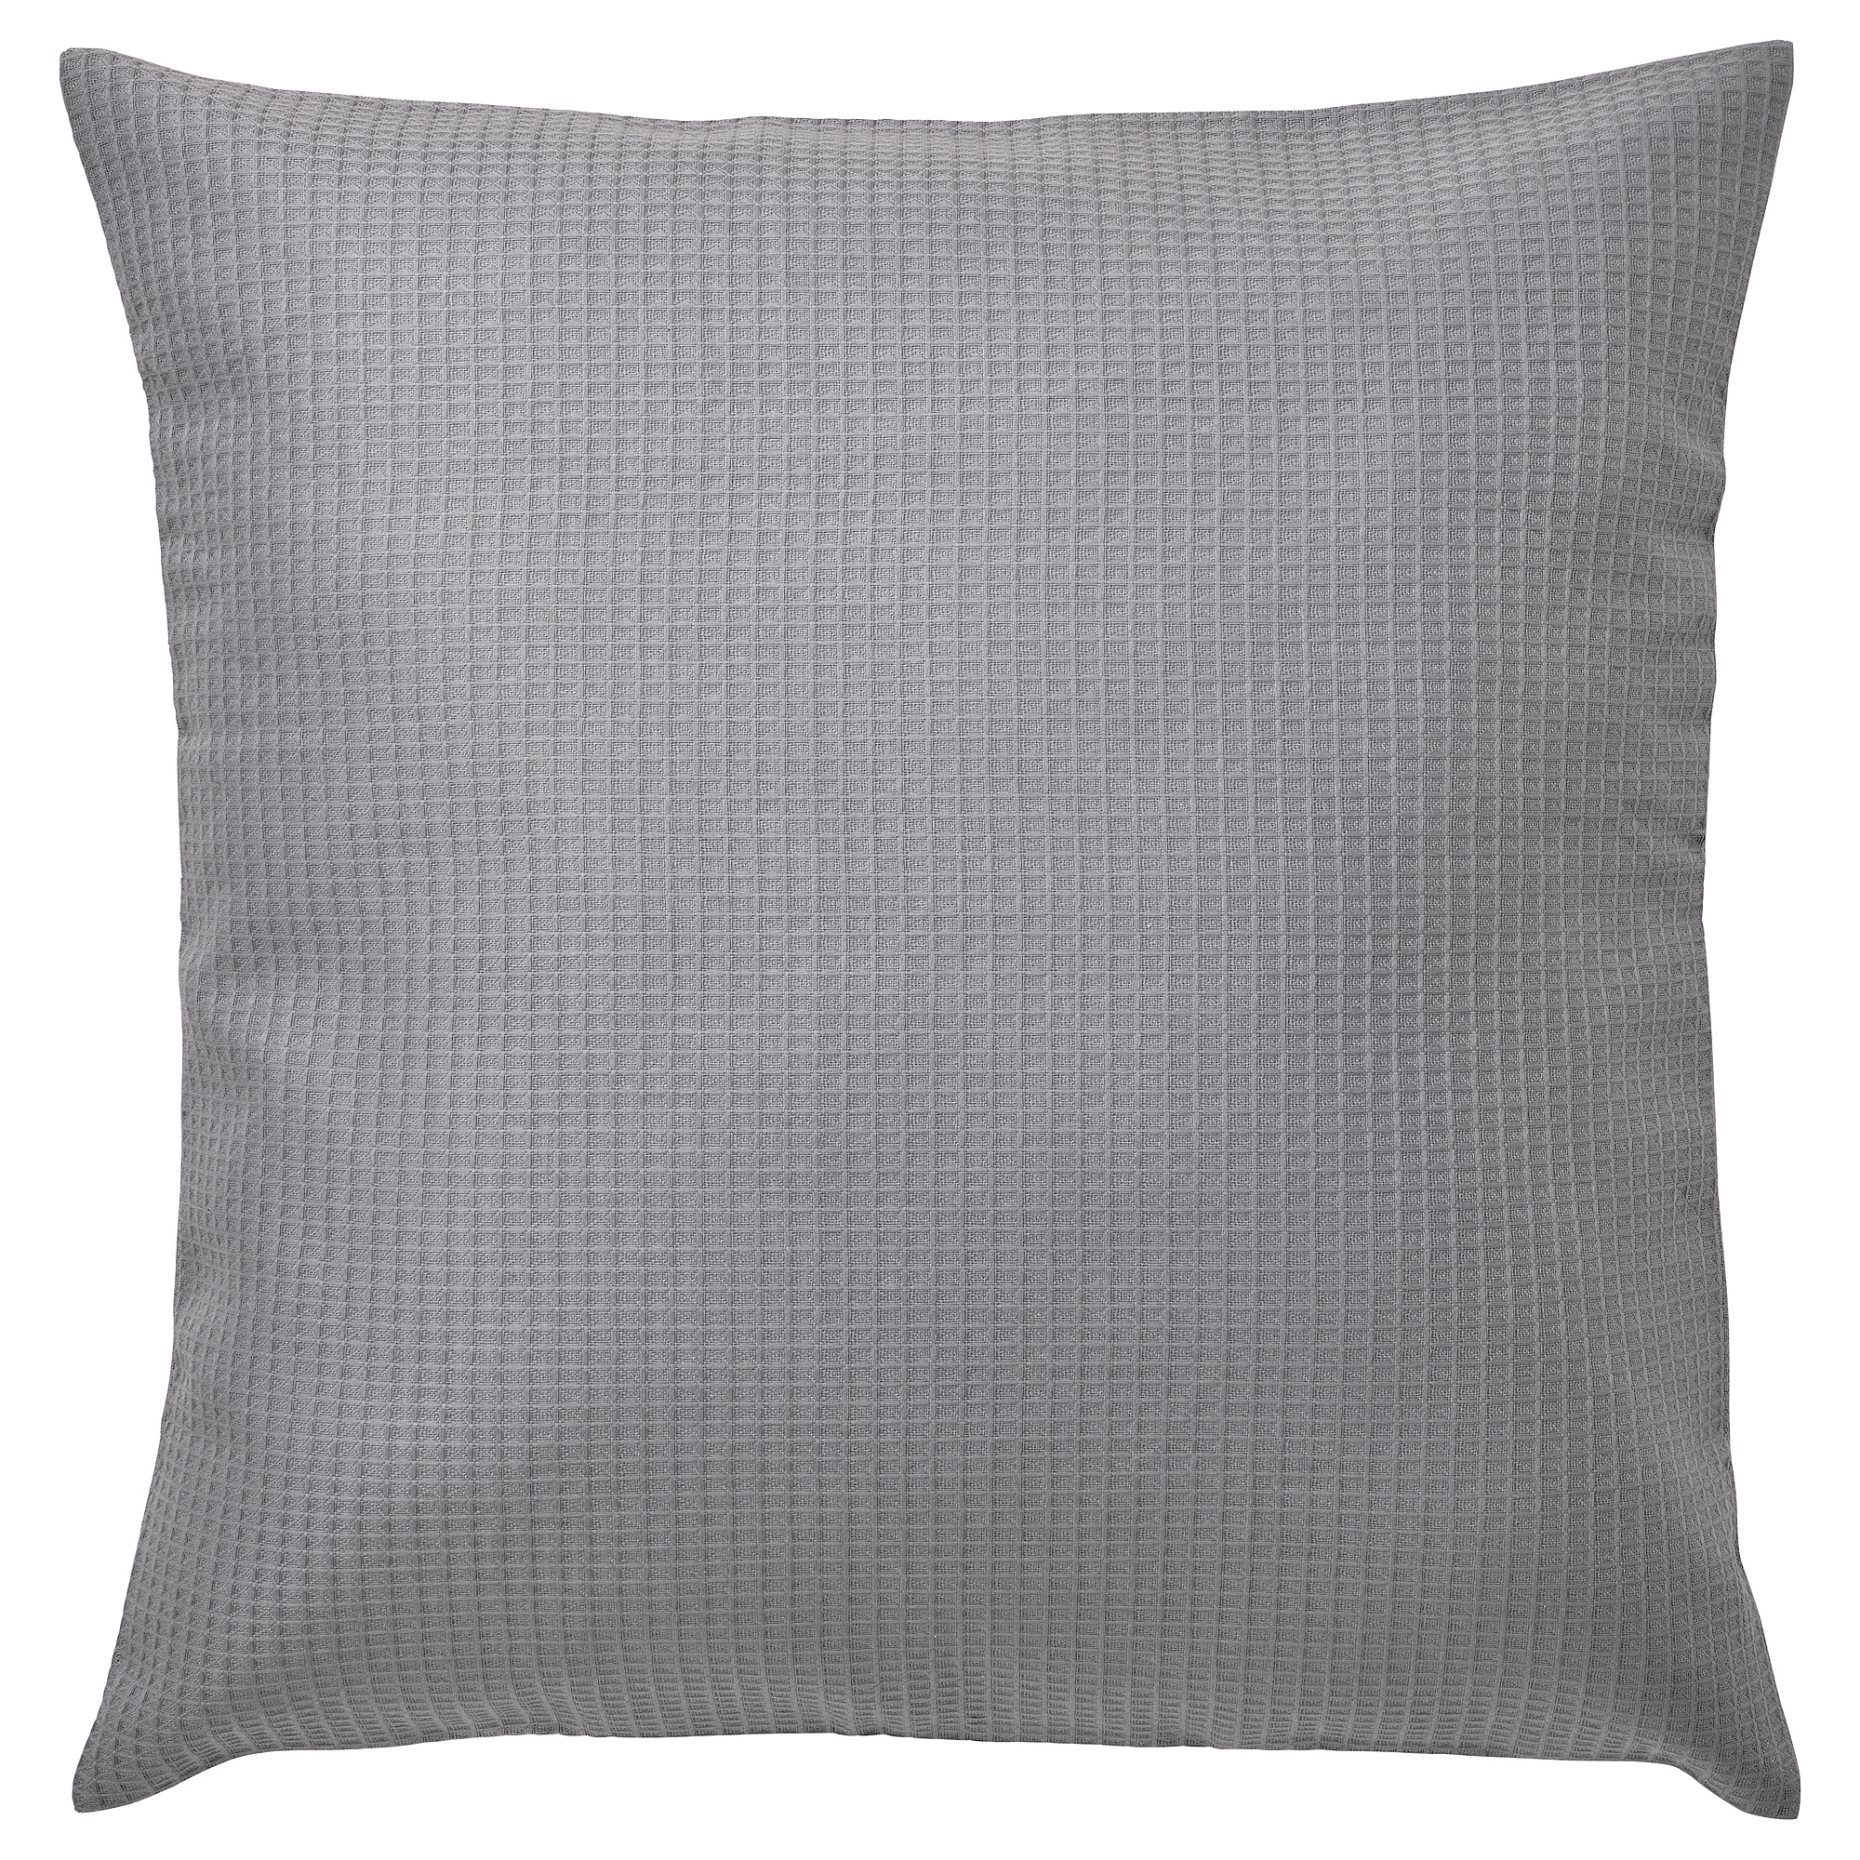 EBBATILDA, cushion cover, 50x50 cm, 405.420.86